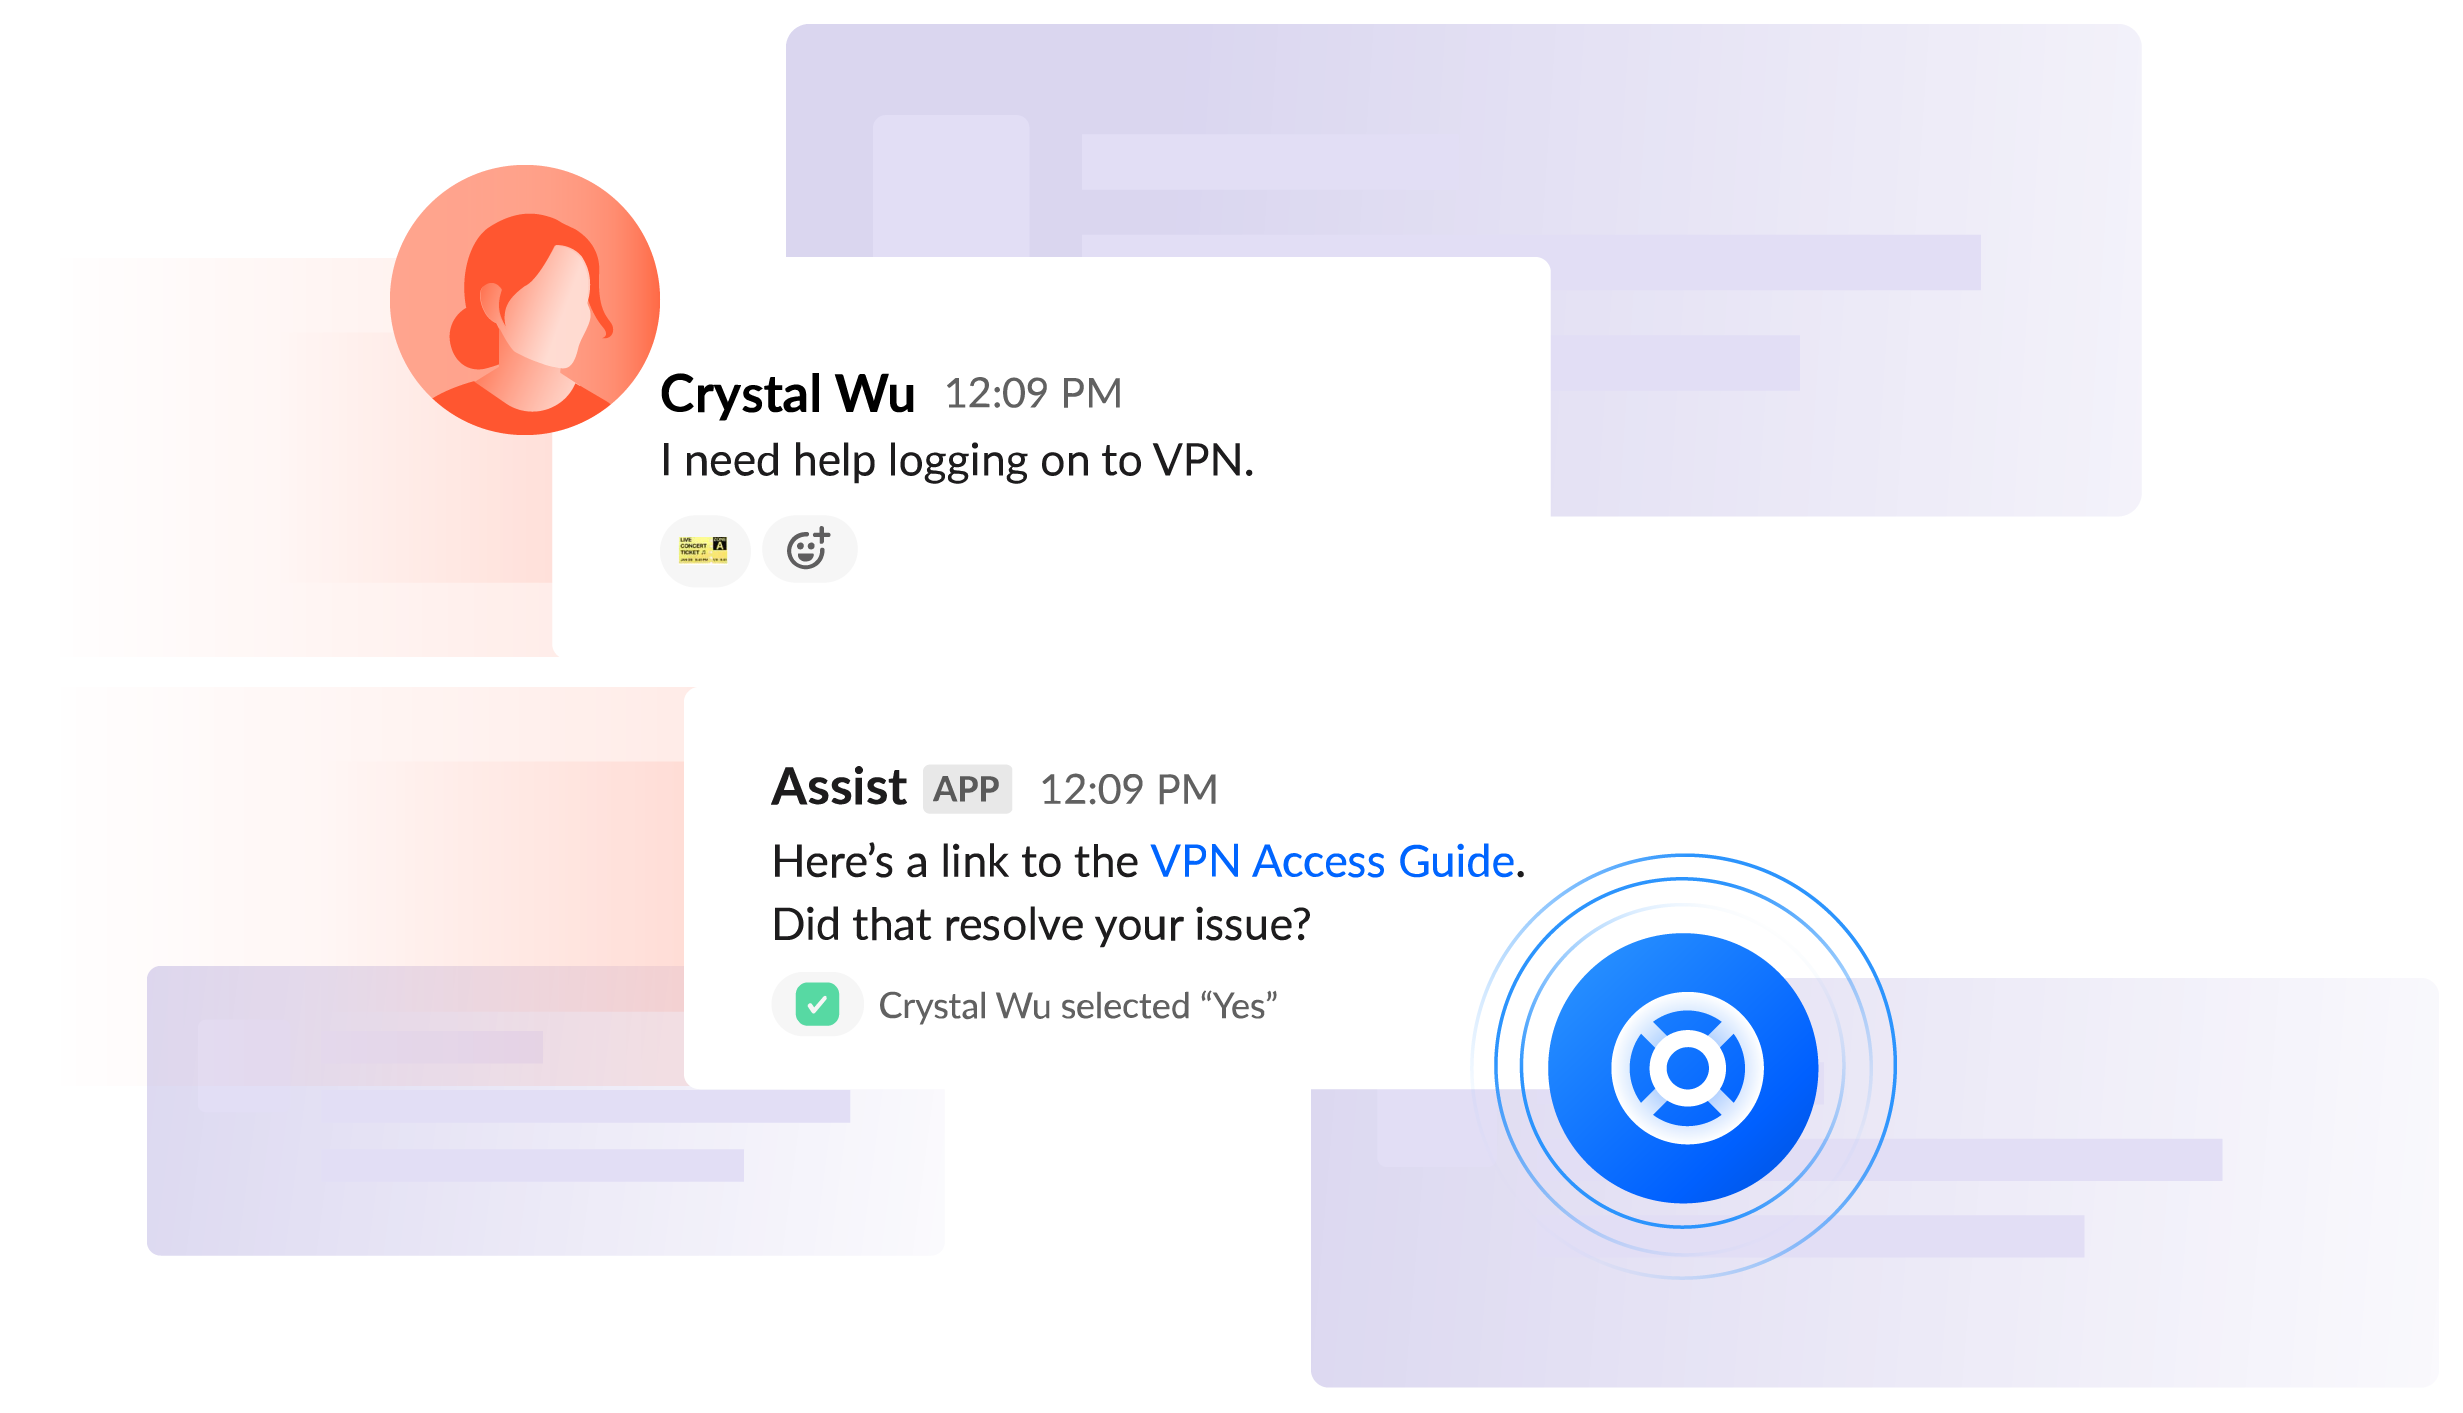 Chat de Slack: "Necesito ayuda para iniciar sesión en la VPN"- Crystal; "Aquí tienes un enlace a la guía de acceso a la VPN. ¿Se ha resuelto tu incidencia?" - Assist